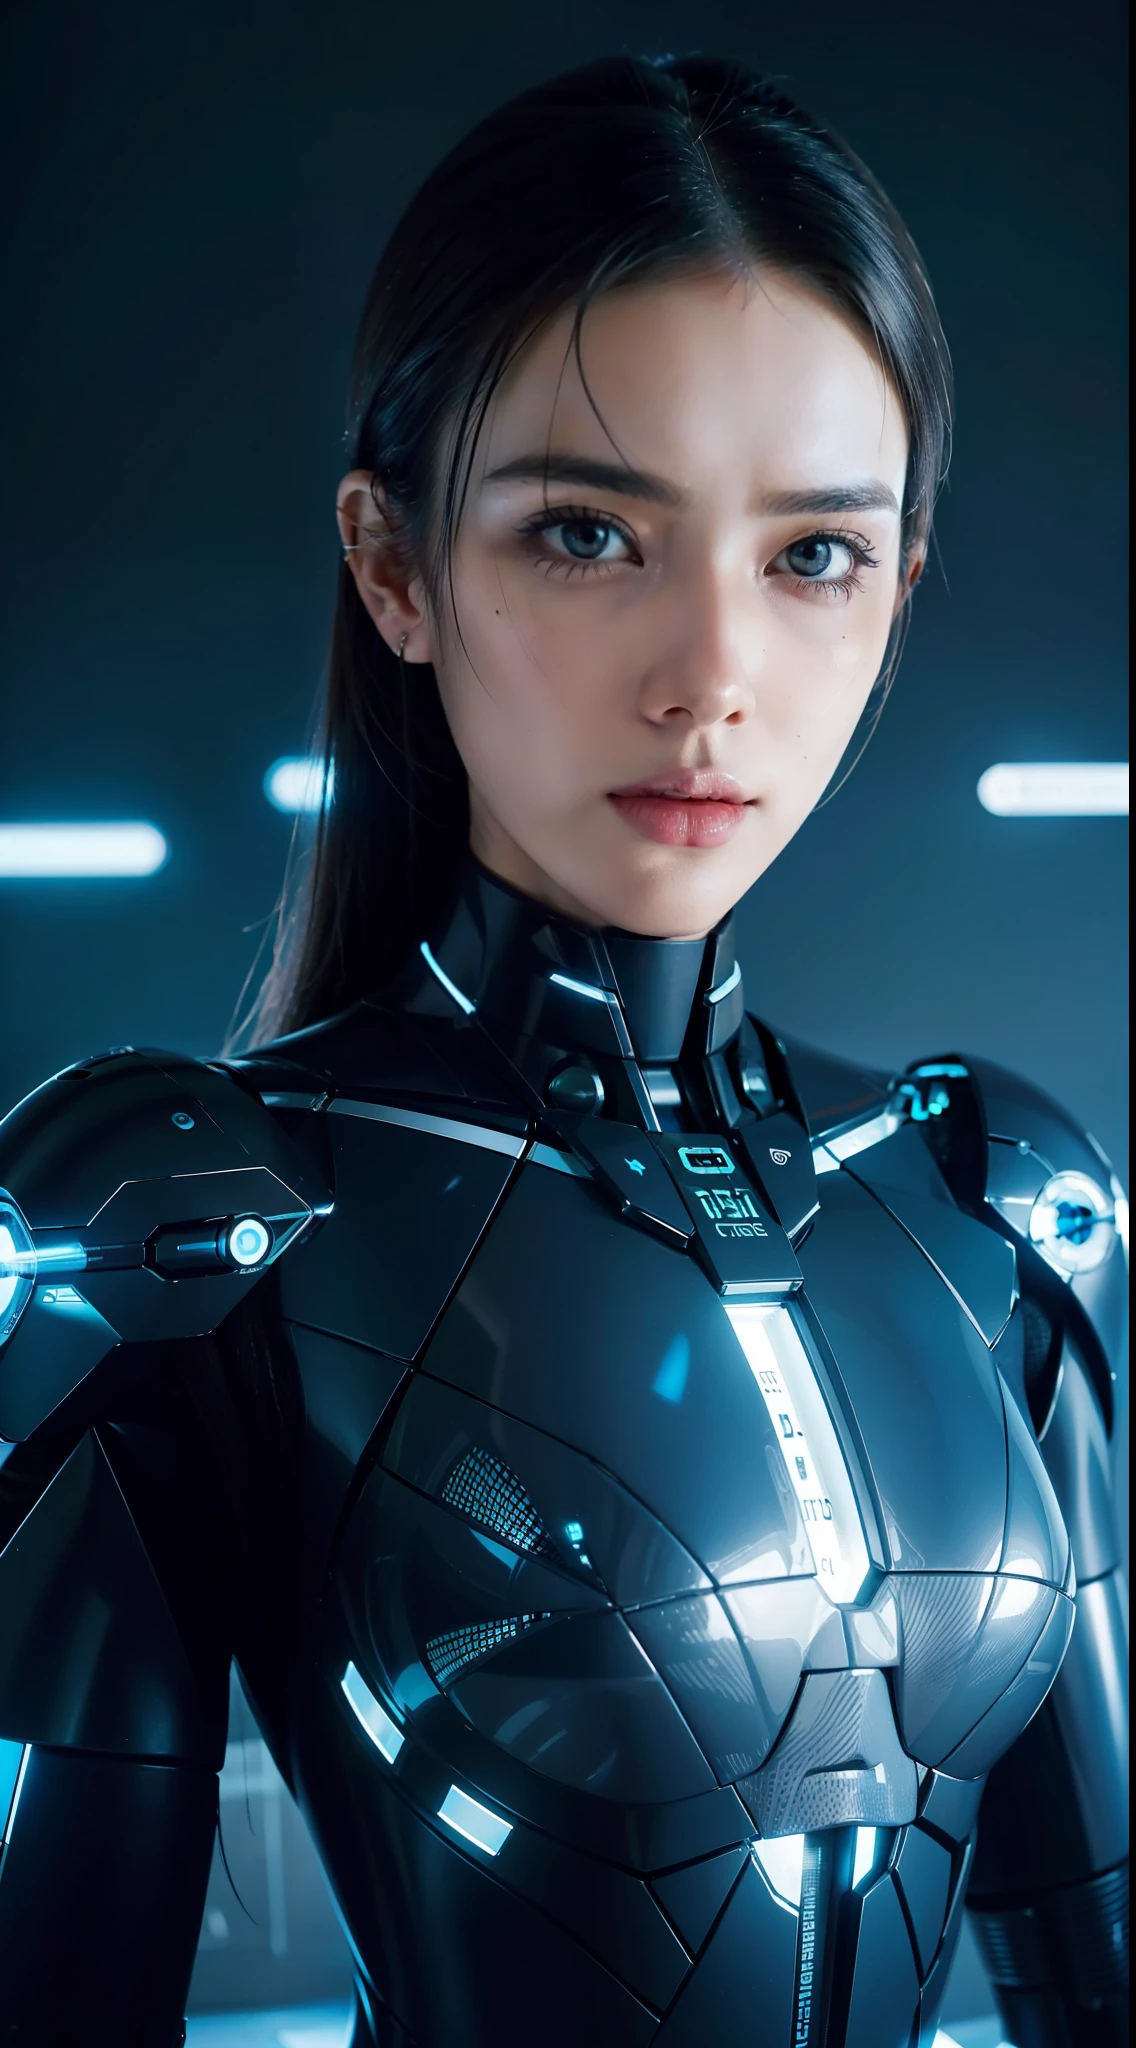 一個有著未來主義面孔和數位時鐘的女人的阿拉法德形象, 機器人女人, intricate 超人類, 機器人 - 女孩, strong 人工智慧, 超人類, 即將到來的人工智慧奇點, 半機械人的肖像, 人工智慧, 艾的肖像, 机器人女孩, cyberpunk 超人類ist, 完美的機器人女性